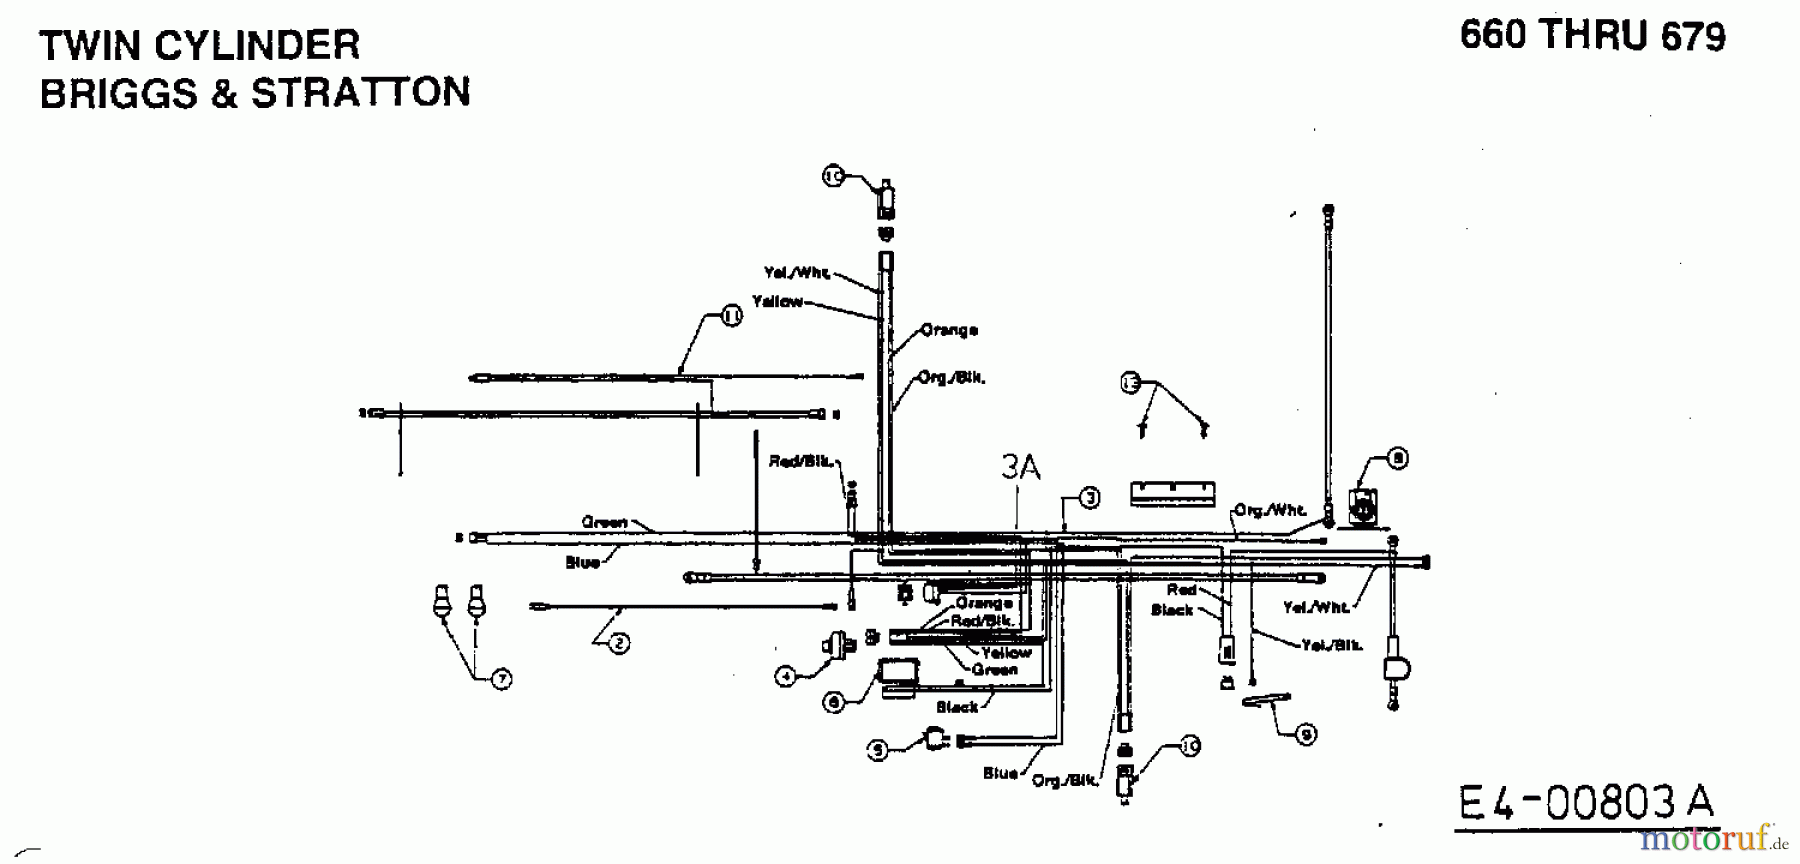  MTD Tracteurs de pelouse H 160 13AF695G678  (1998) Plan électrique 2 cylindre